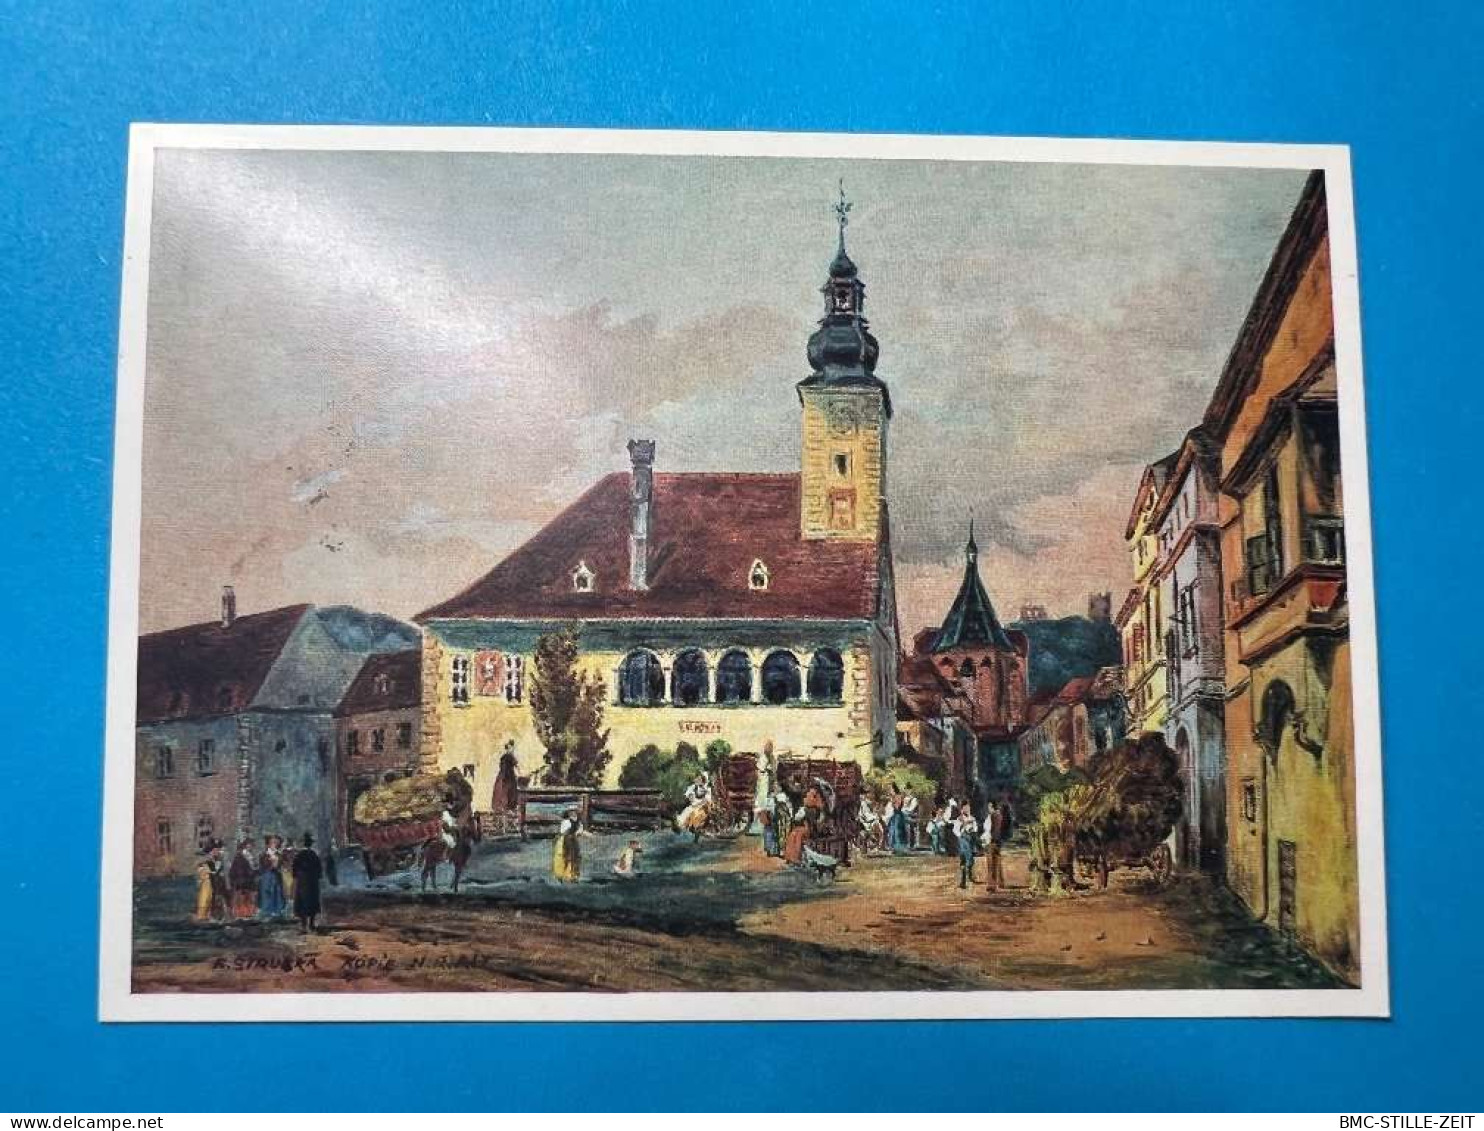 Festpostkarte - Sonderstempel 90 Jahre Mödling - Postkarten